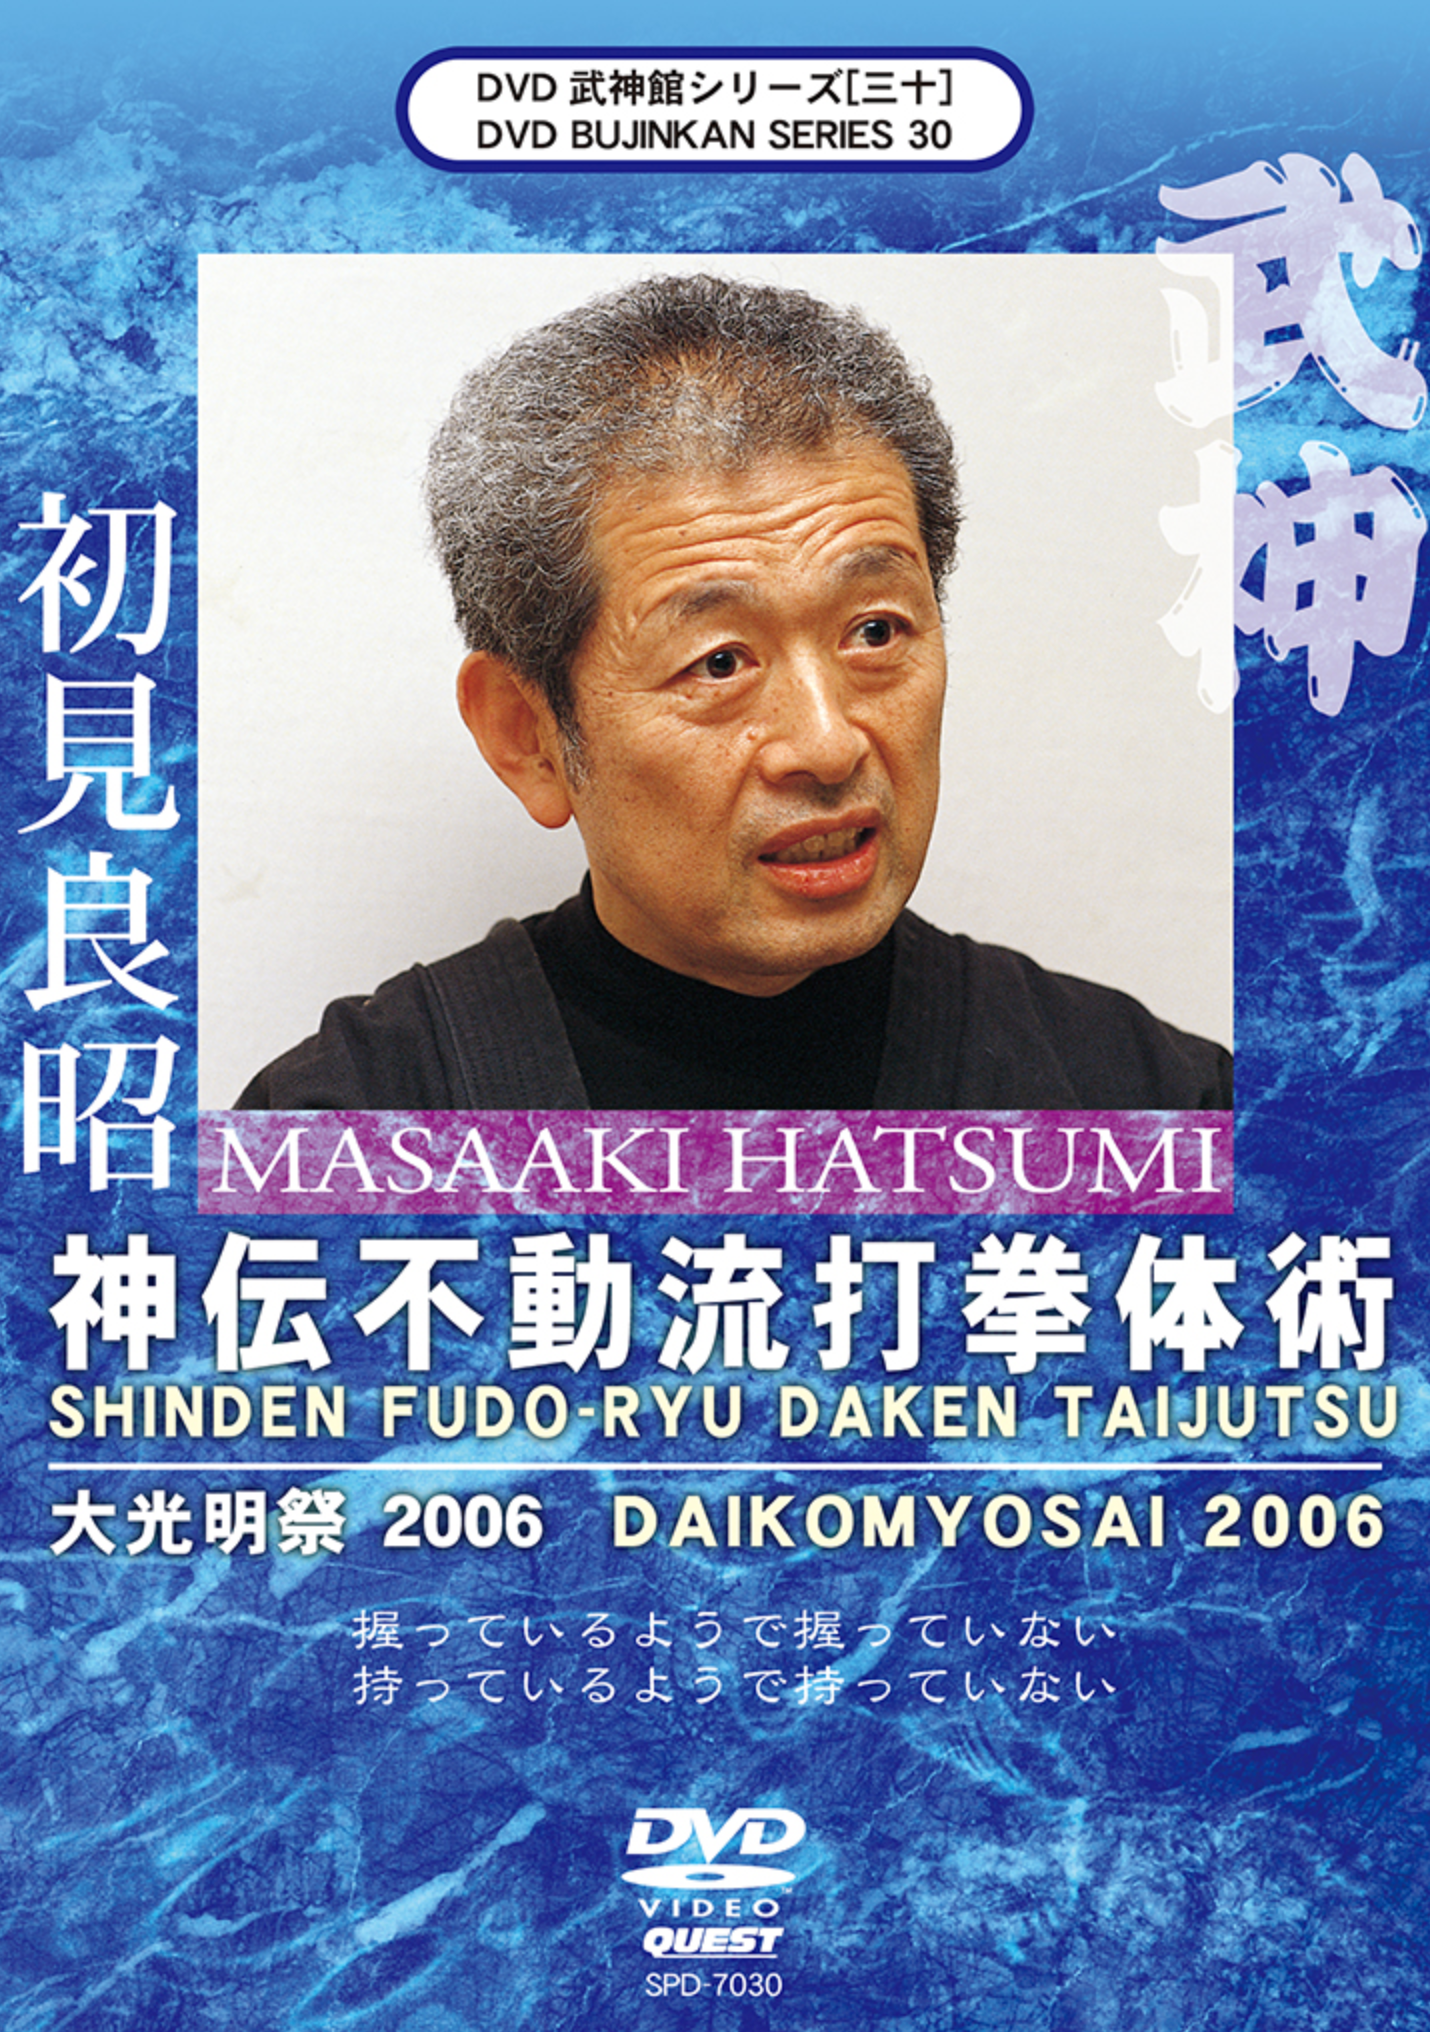 Bujinkan DVD Series 30: Shinden Fudo Ryu Daken Taijutsu with Masaaki Hatsumi - Budovideos Inc